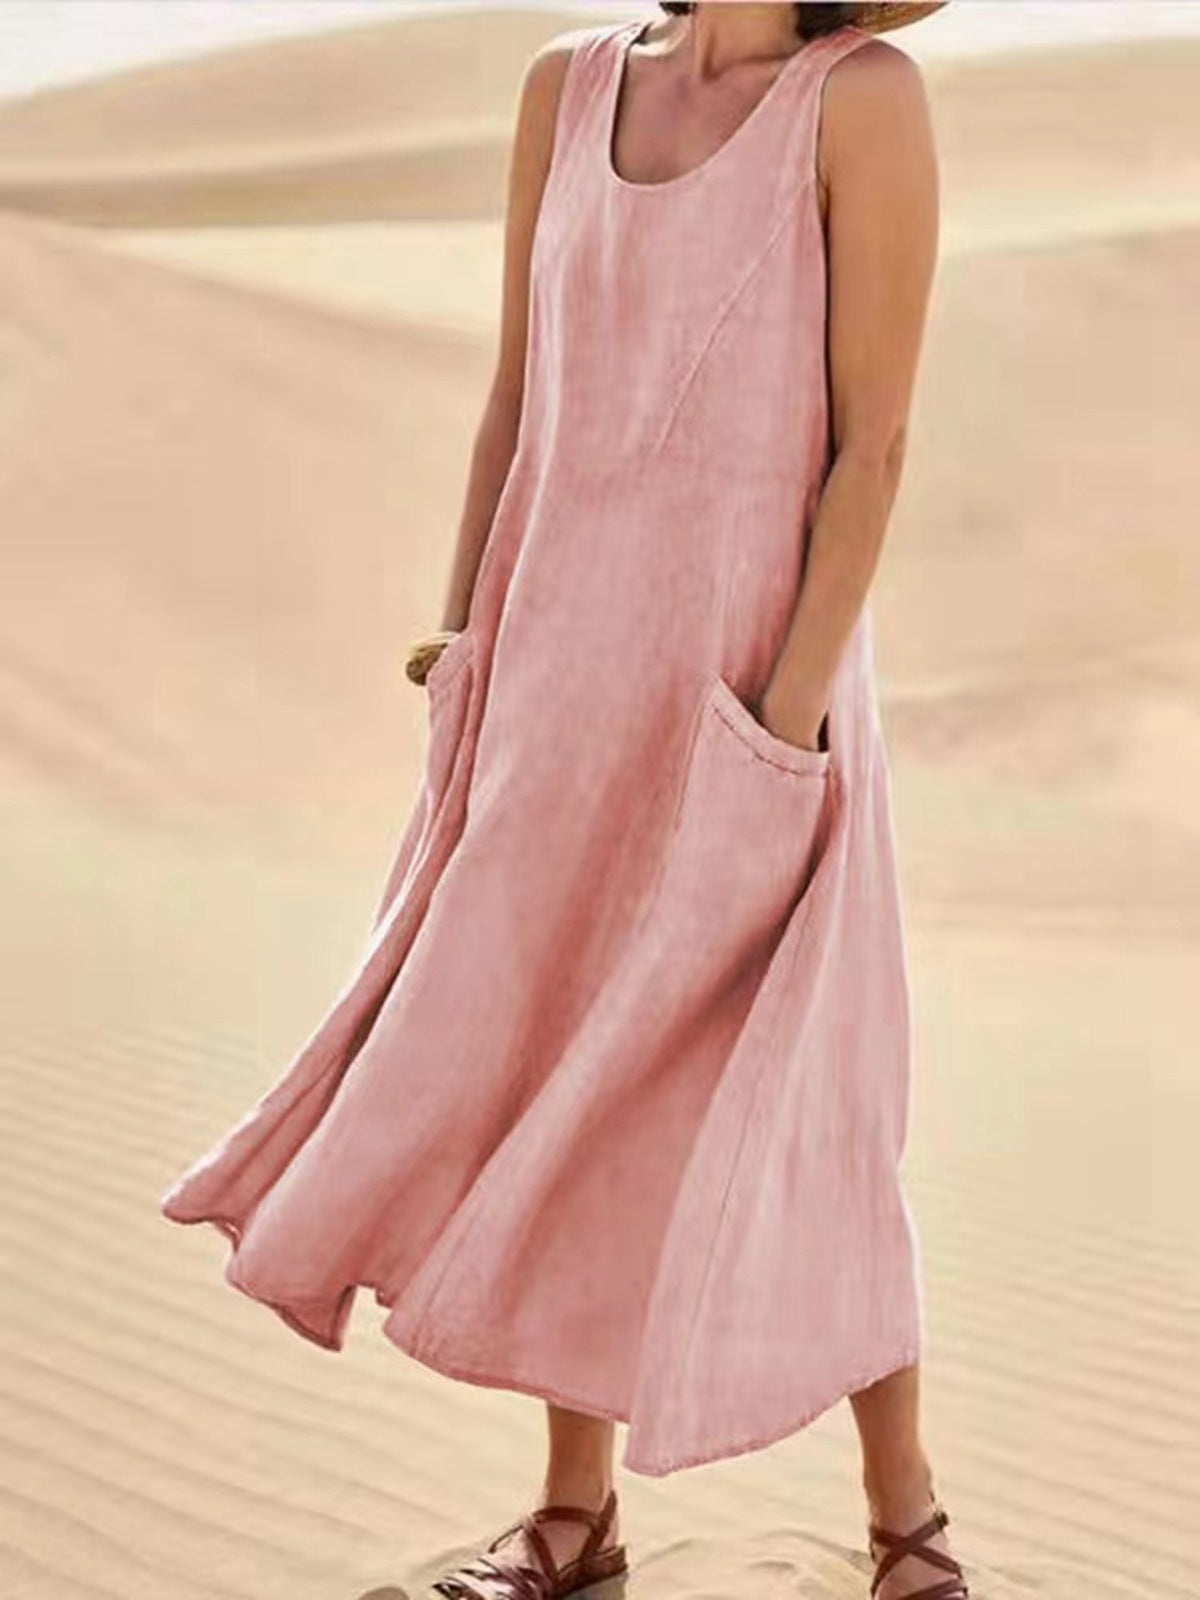 Women's Summer Sleeveless Cotton Linen Dress Dresses